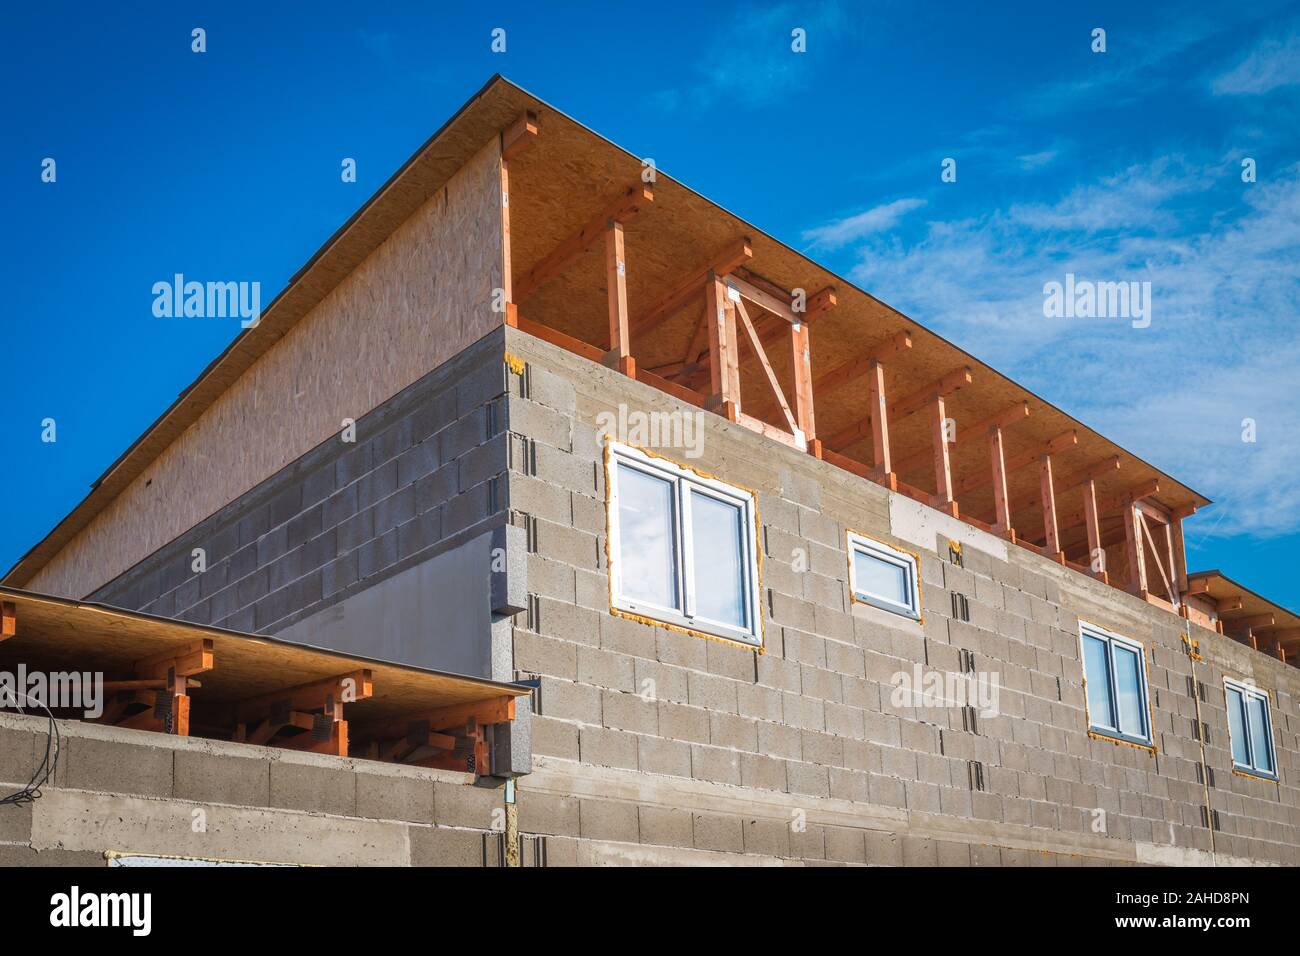 La construction de toit - l'installation de poutres en bois à la maison site de construction. Détails de construction avec le bois, bois et supports métalliques Banque D'Images